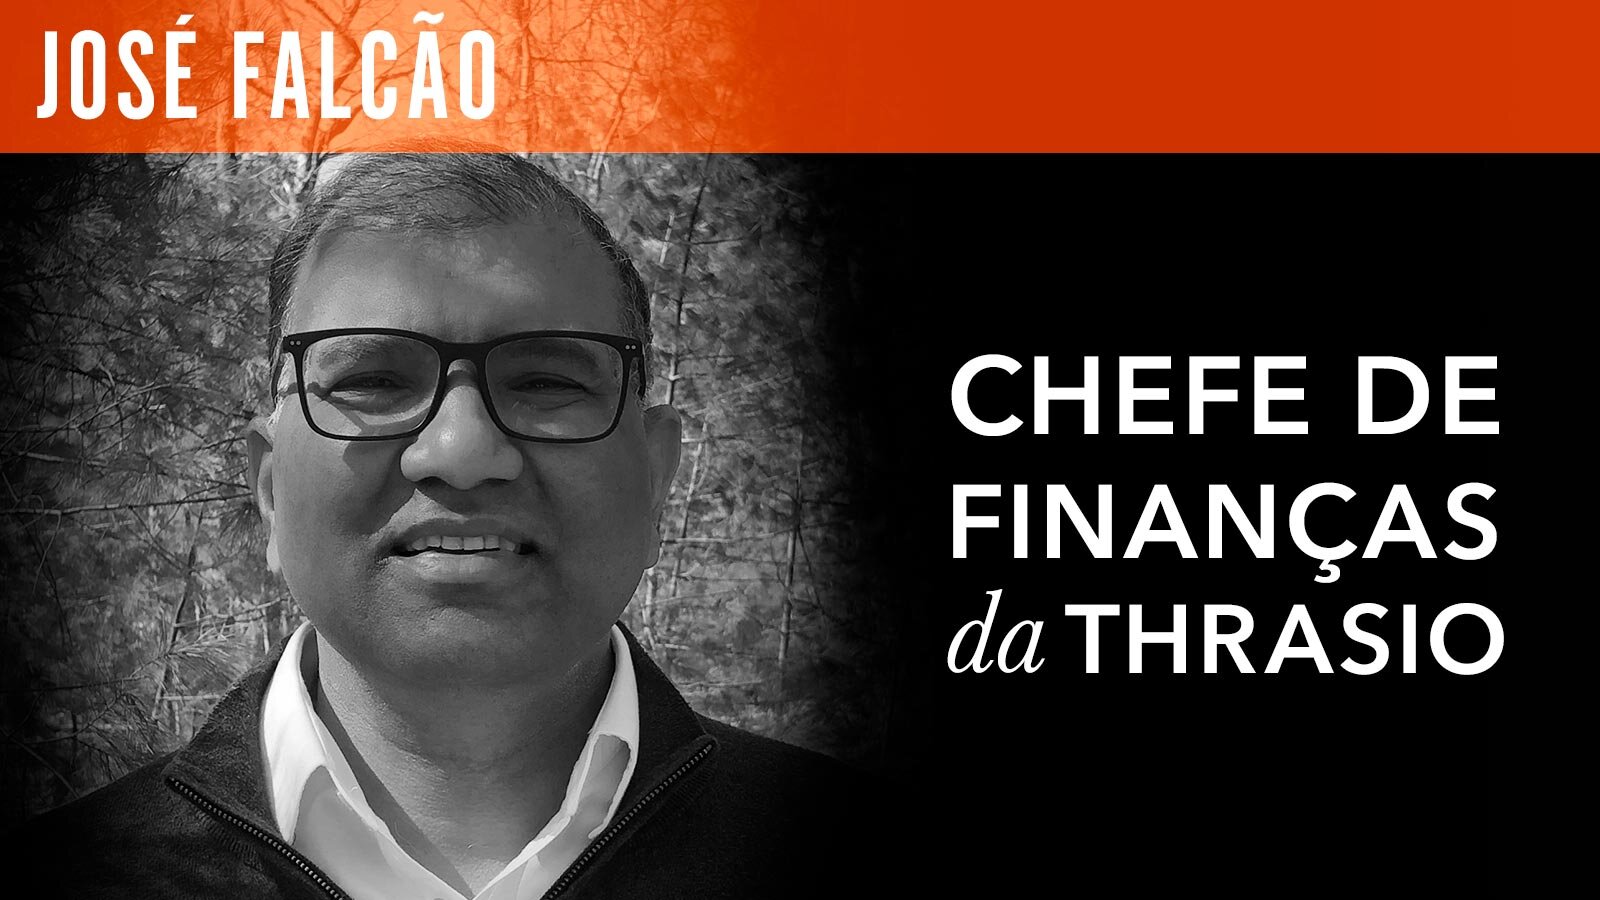 José Falcão – Chefe de Finanças da Thrasio